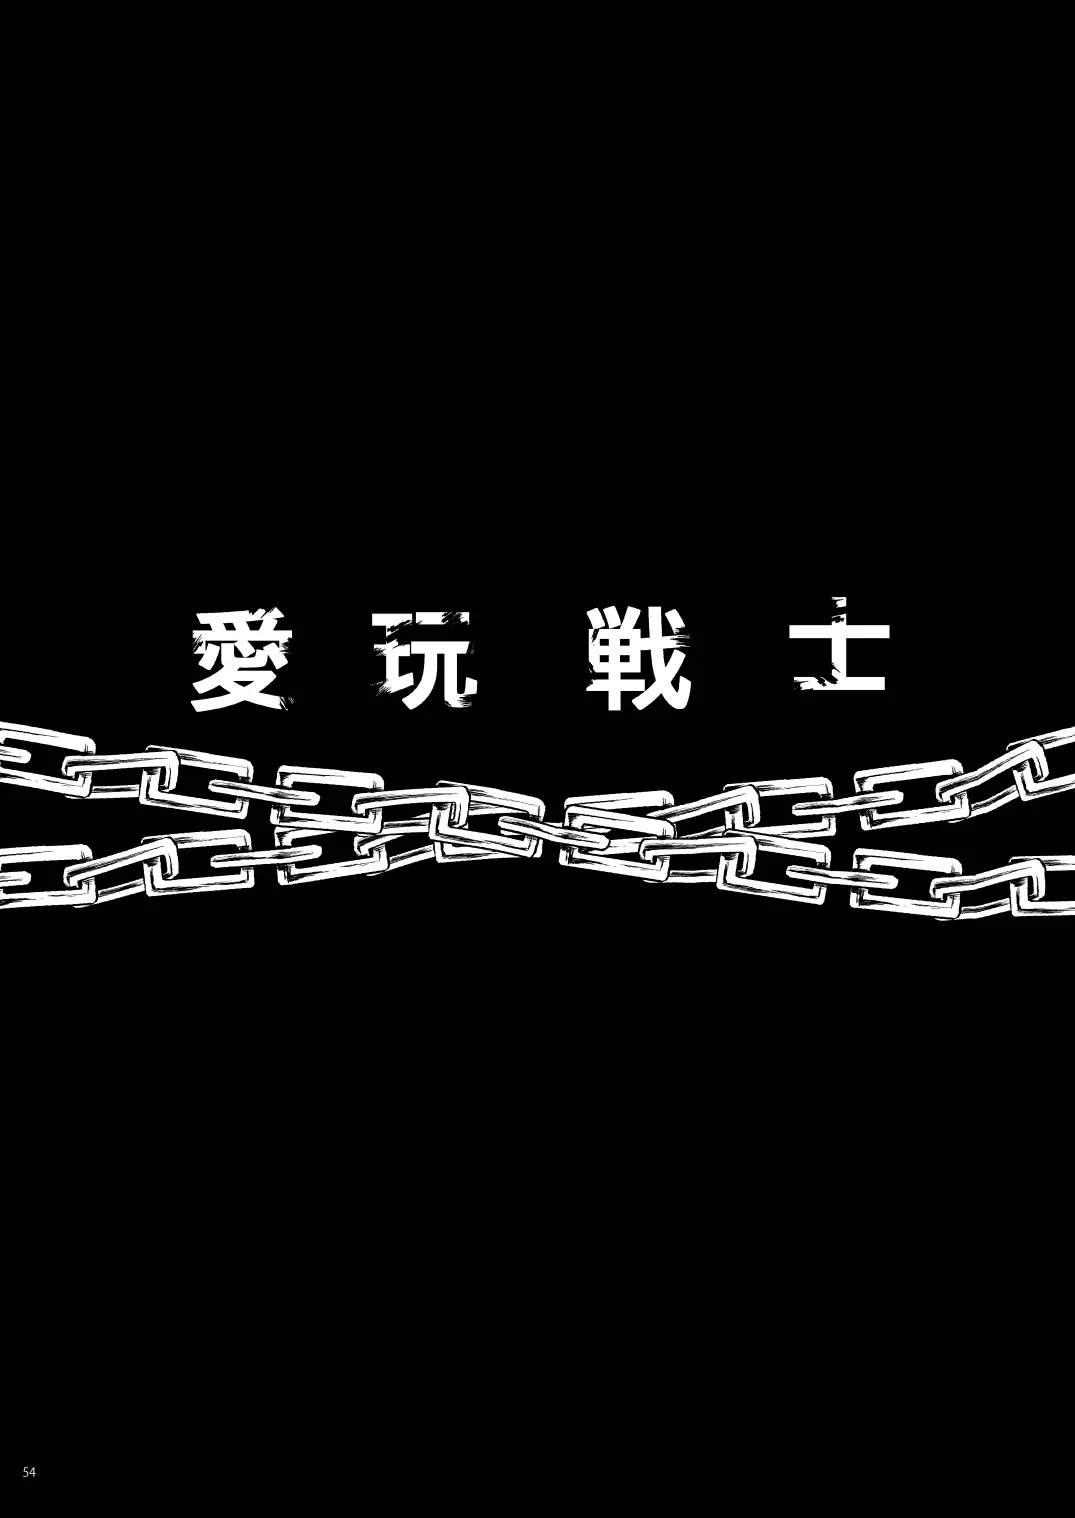 完全敗北愛玩戦士総集編 ドキドキ プリキュア-53